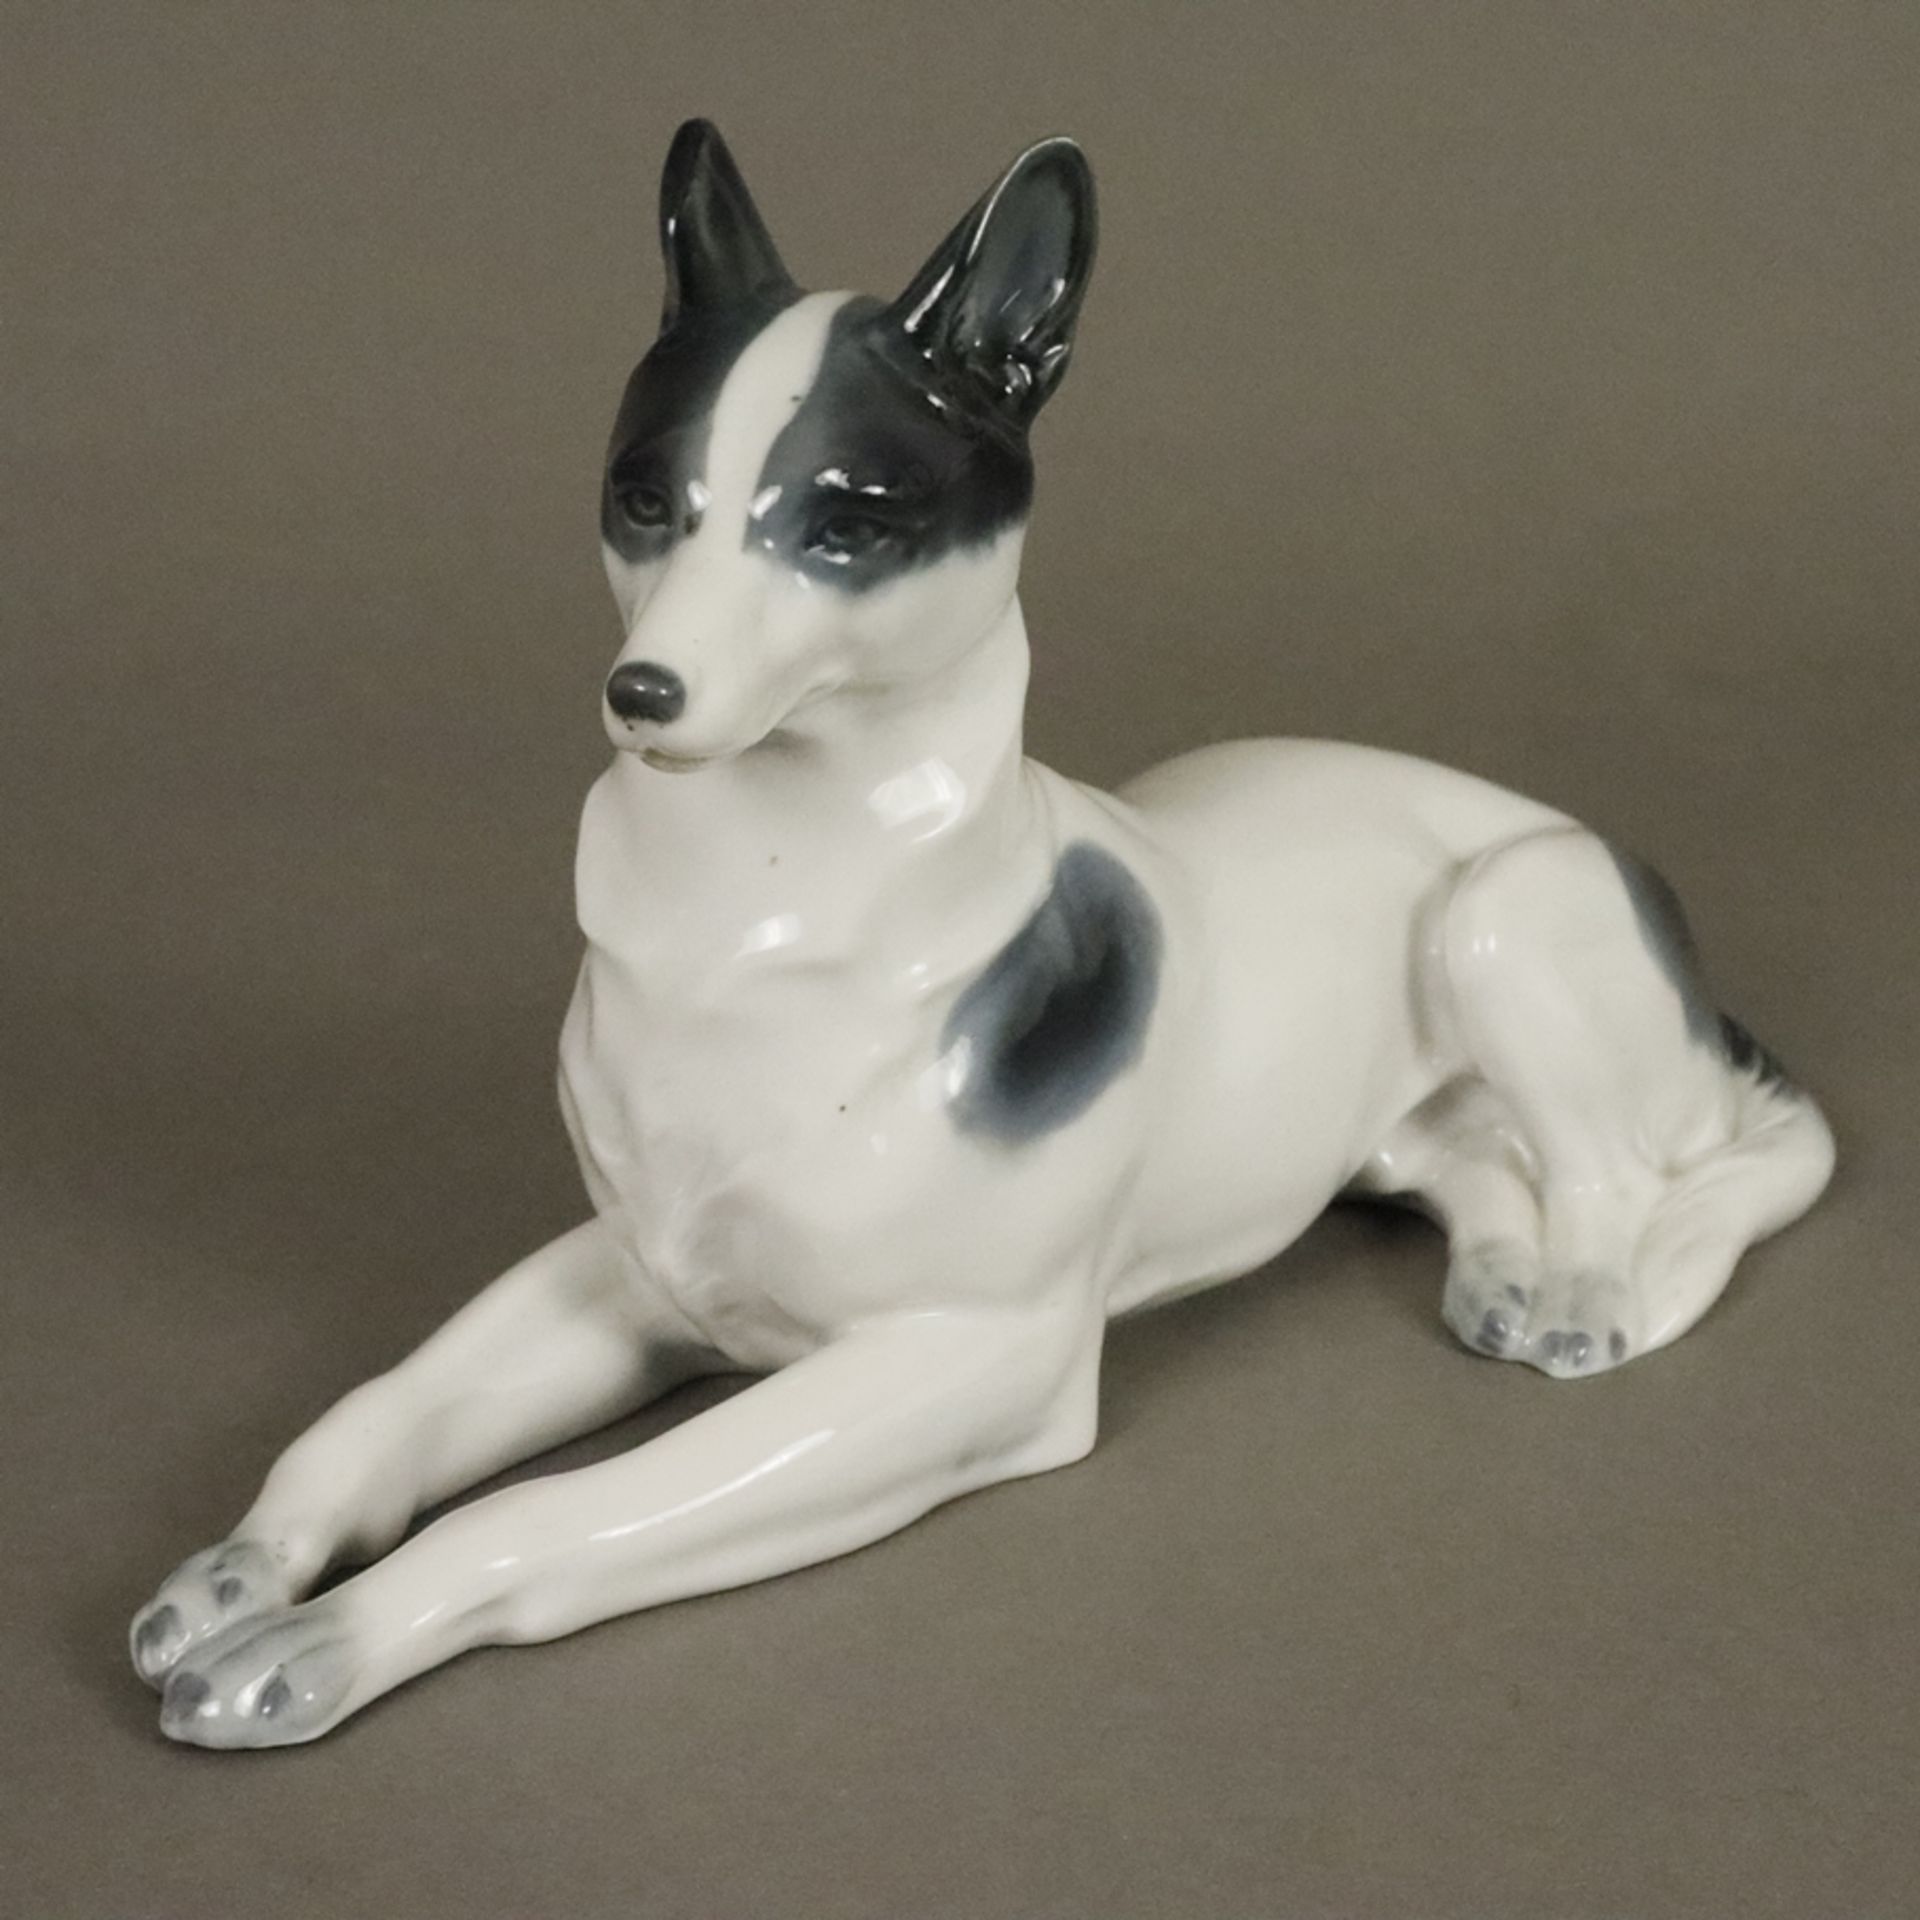 Liegende Hundefigur - Metzler & Orloff, Porzellan glasiert in Grau-Schwarztönen staffiert, Bodenmar